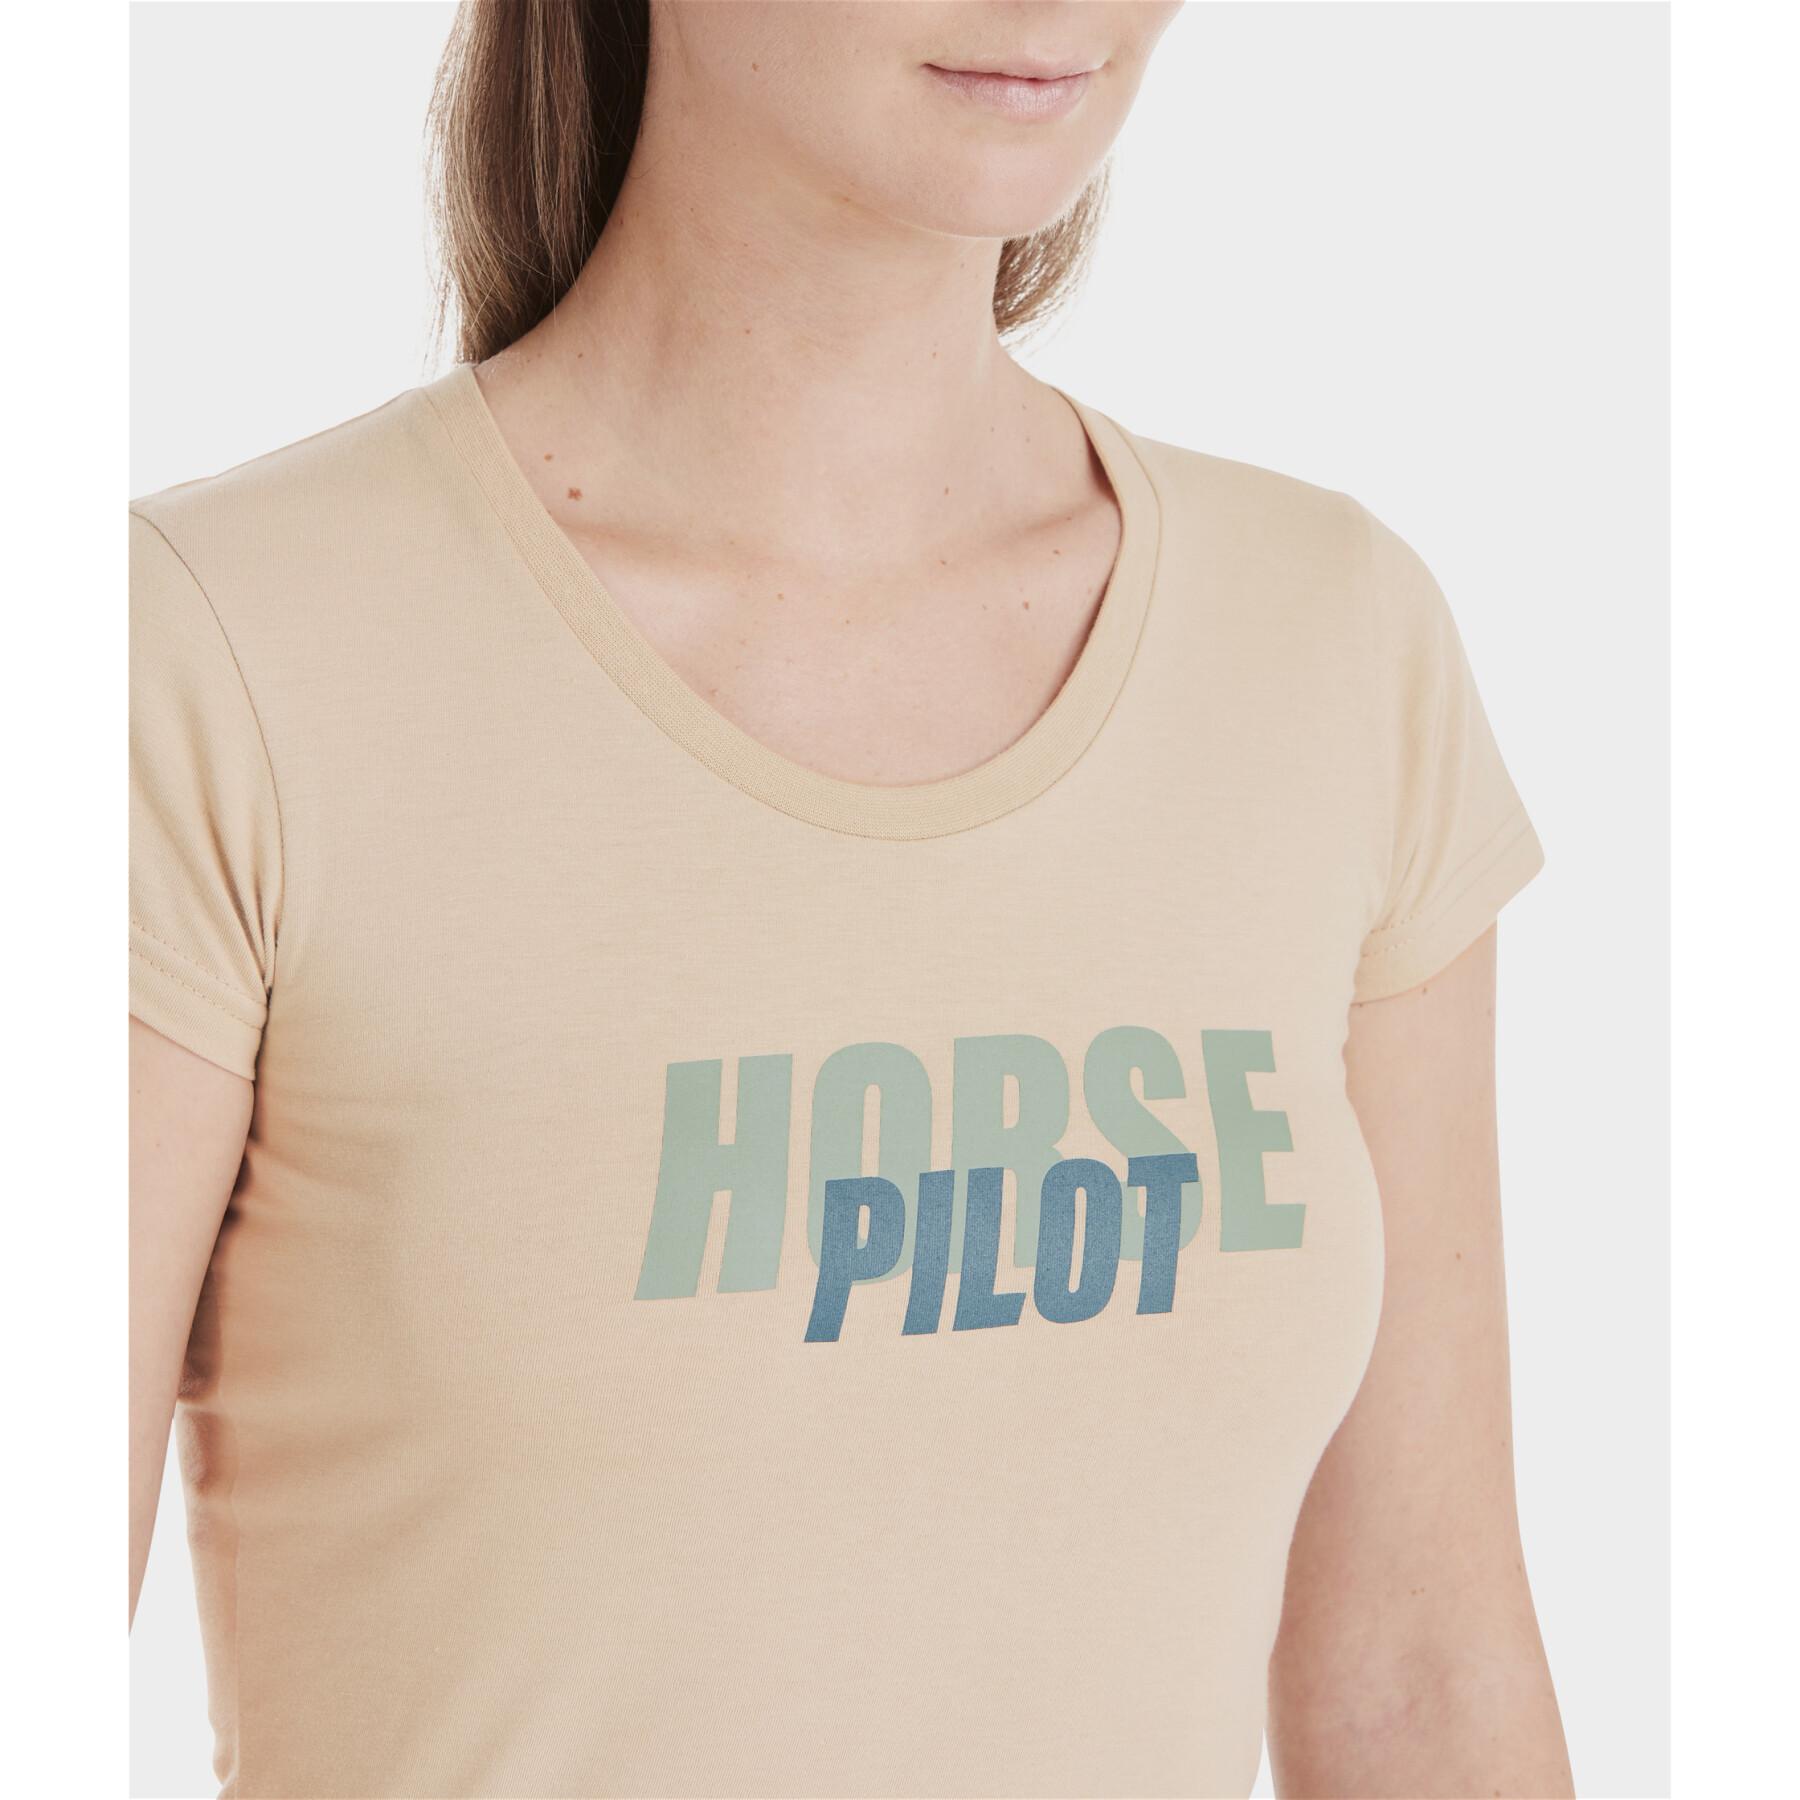 Women's T-shirt Horse Pilot Team